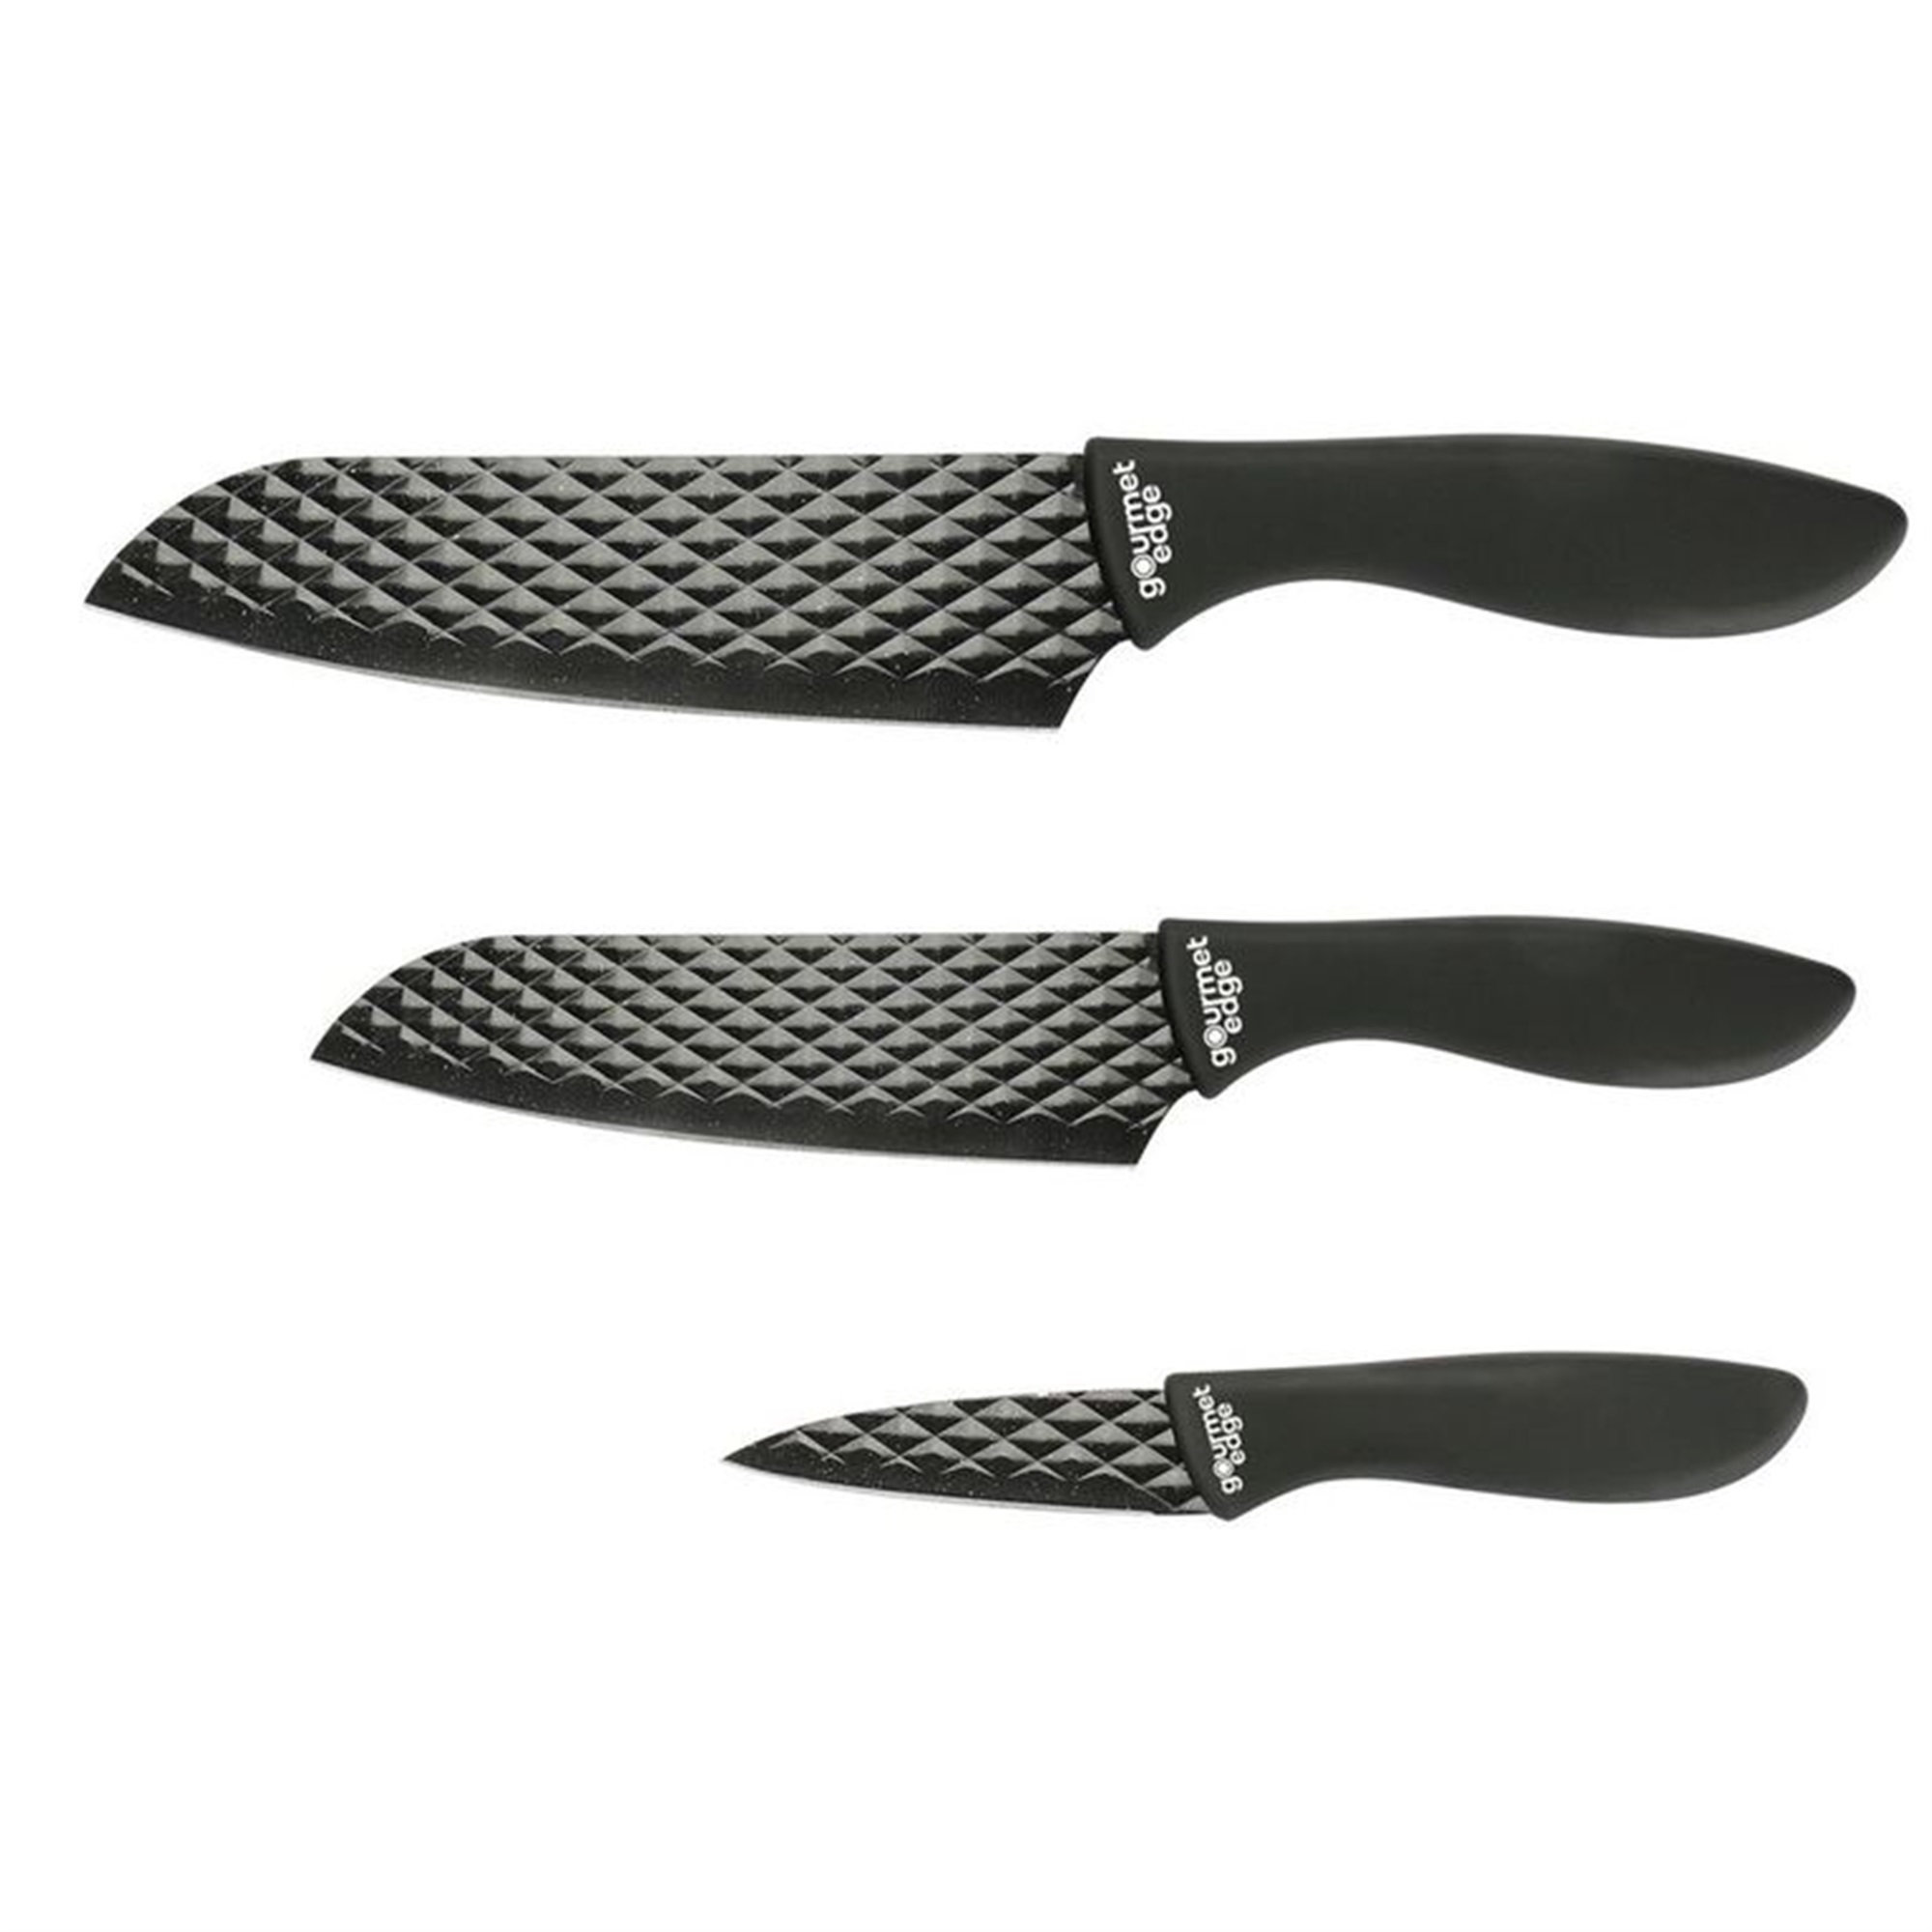 https://assets.wfcdn.com/im/03880916/compr-r85/2411/241108765/gourmet-edge-3-piece-high-carbon-stainless-steel-assorted-knife-set.jpg